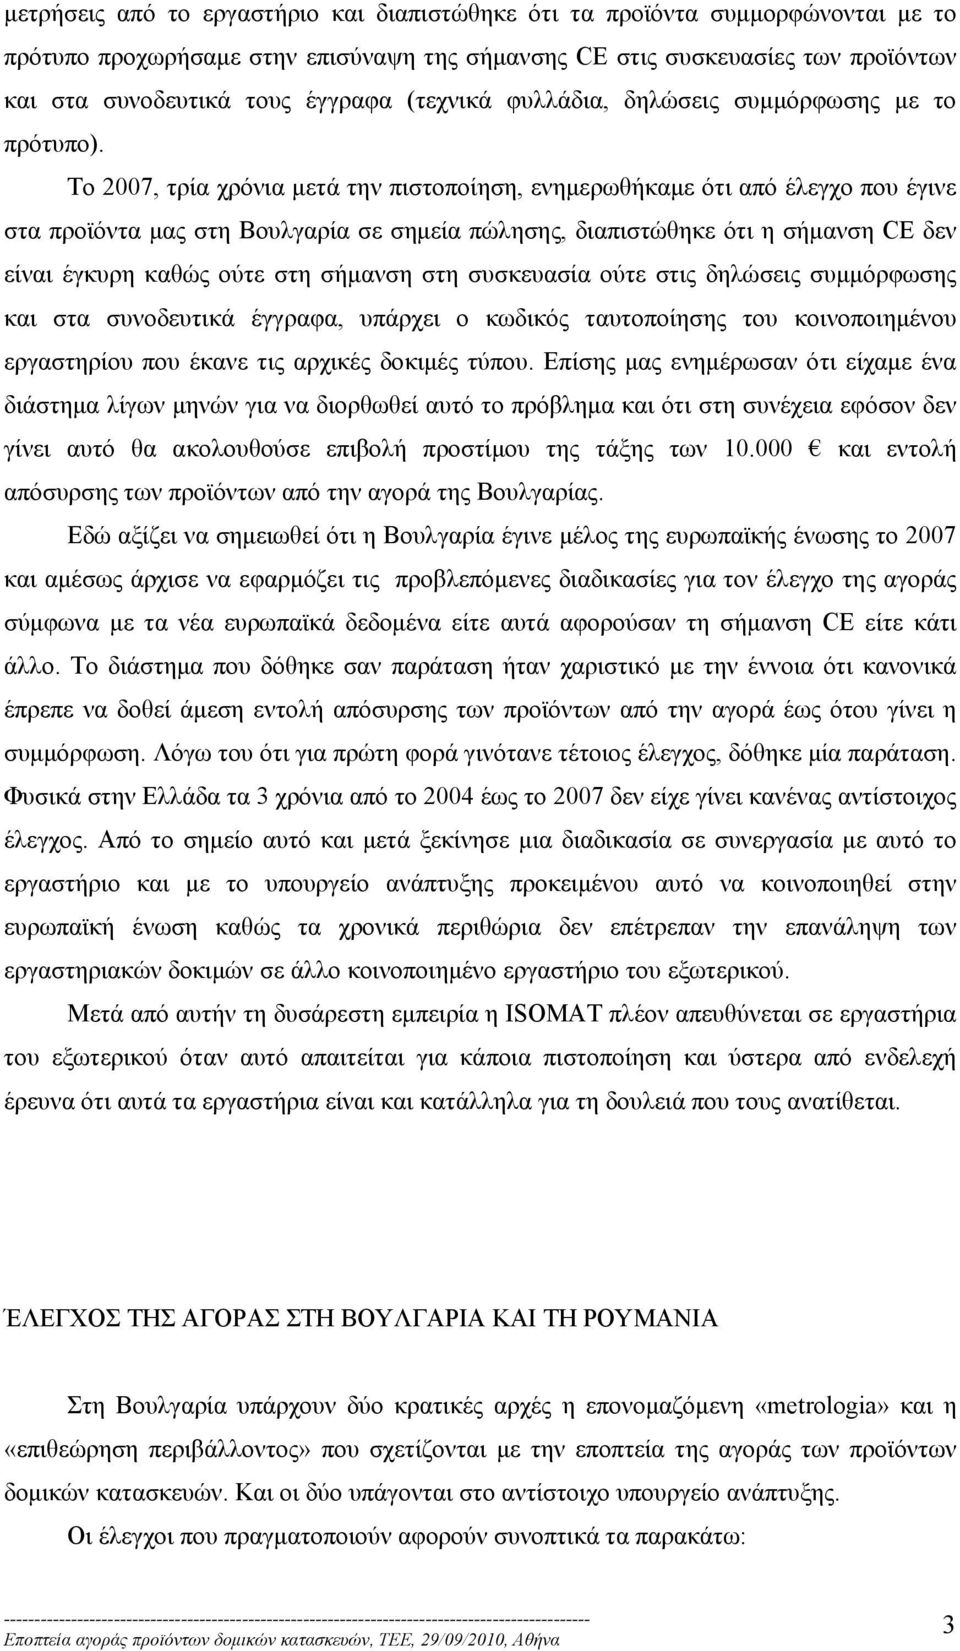 Το 2007, τρία χρόνια μετά την πιστοποίηση, ενημερωθήκαμε ότι από έλεγχο που έγινε στα προϊόντα μας στη Βουλγαρία σε σημεία πώλησης, διαπιστώθηκε ότι η σήμανση CE δεν είναι έγκυρη καθώς ούτε στη